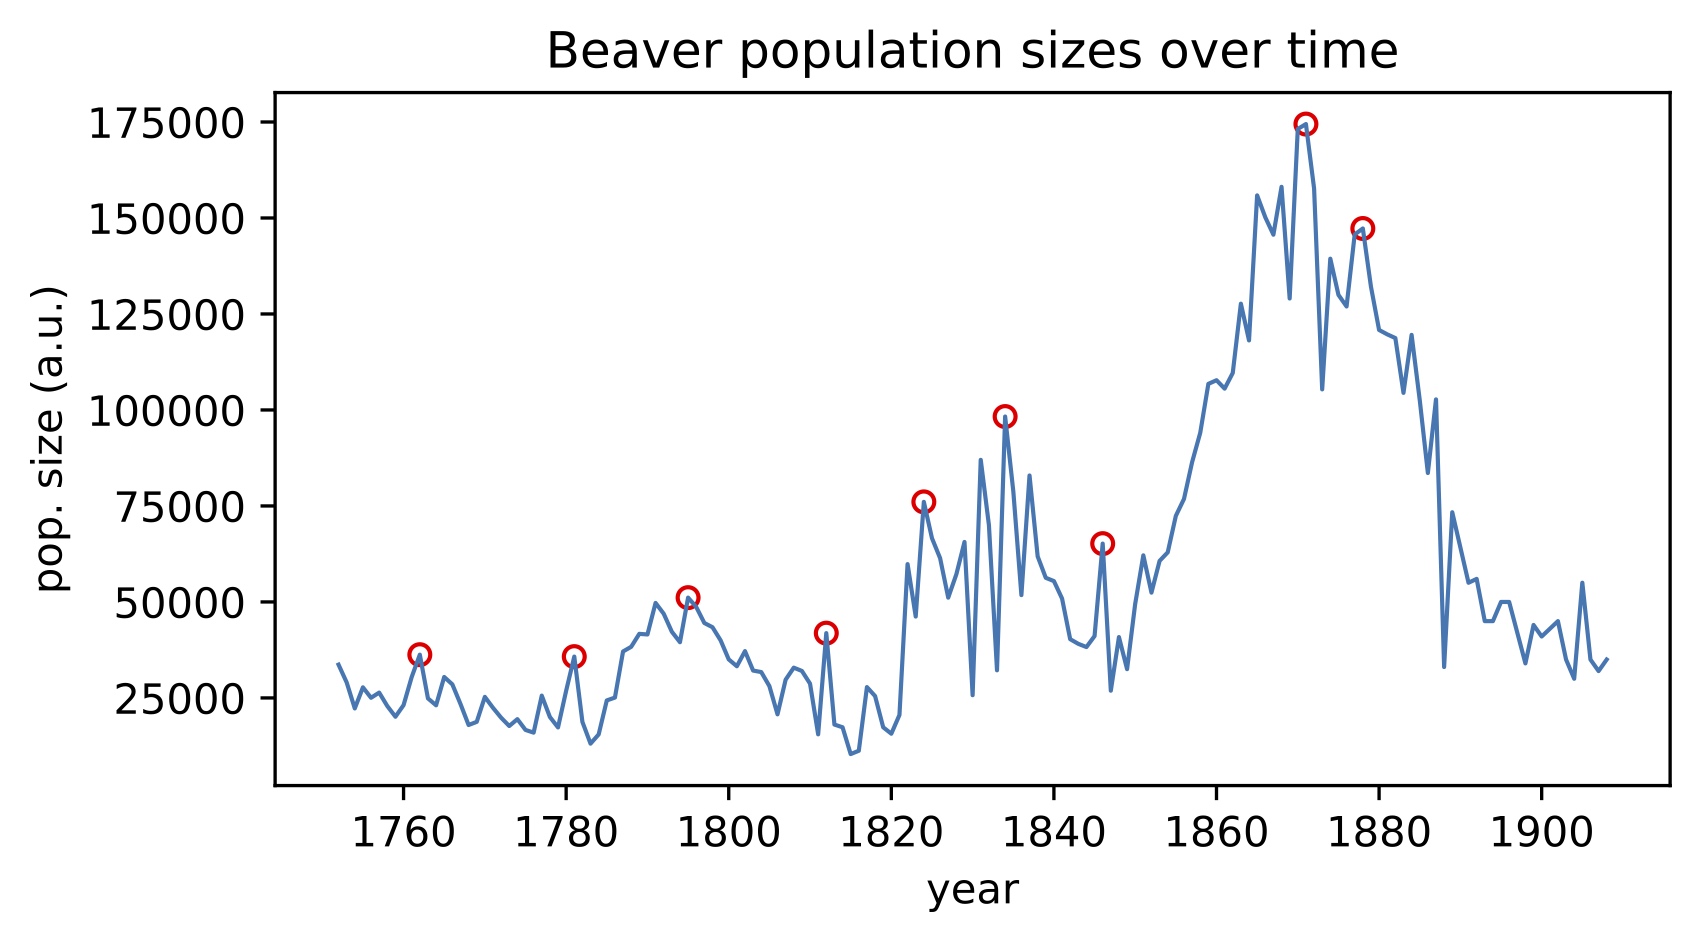 Detecting peaks in bever population time series.